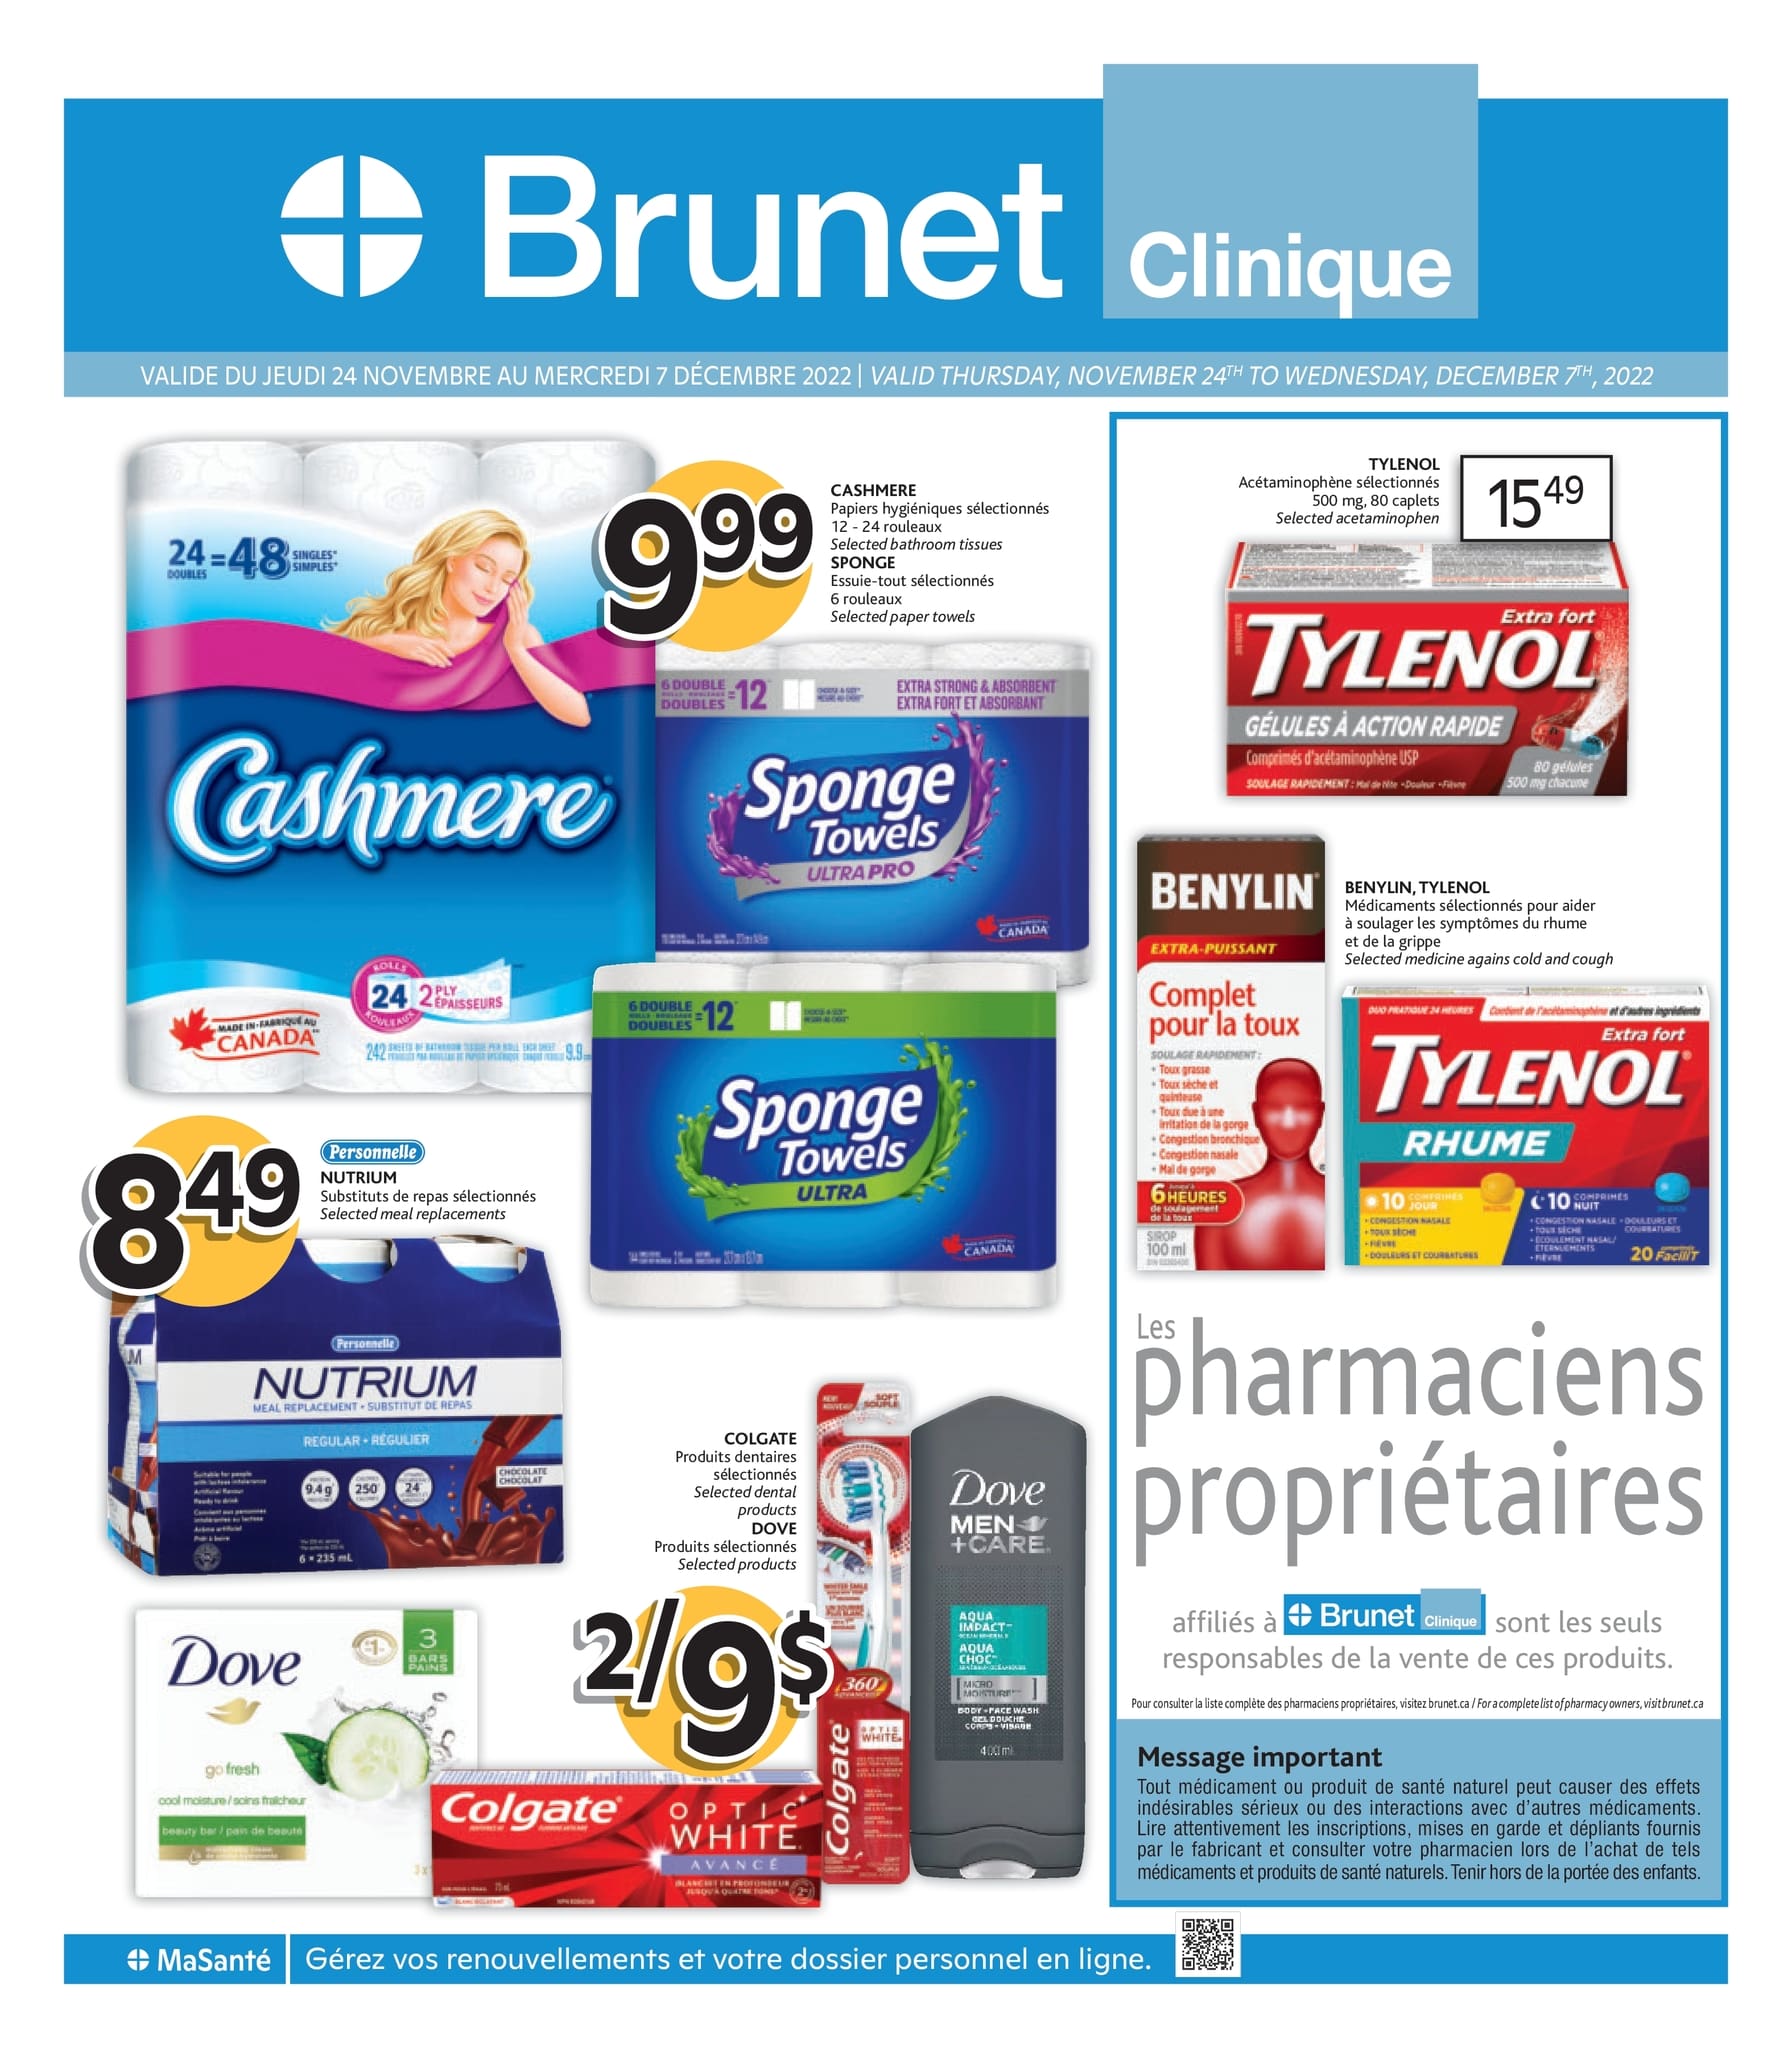 Circulaire Brunet - Clinique - Page 1